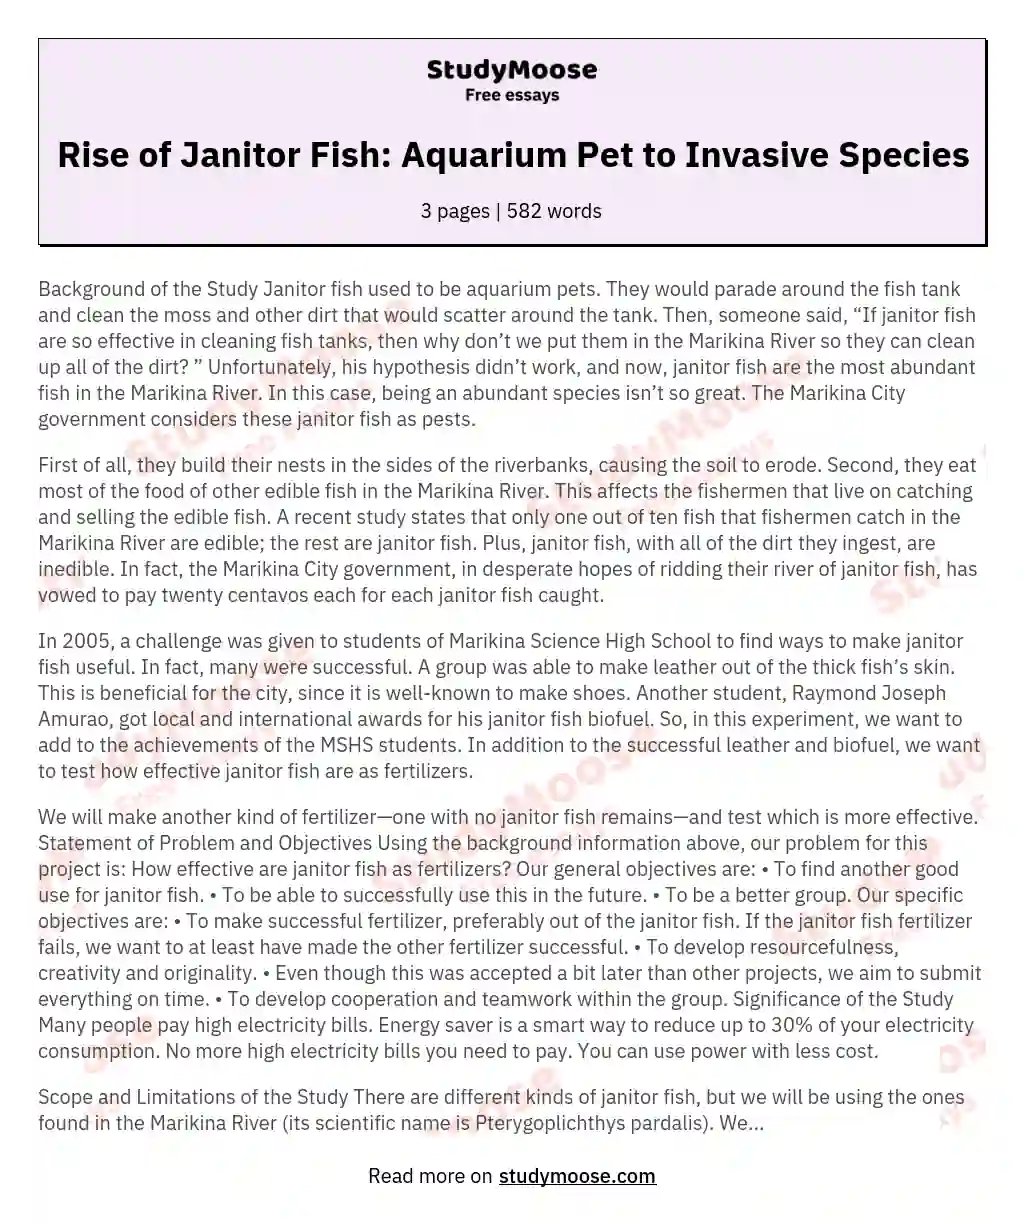 Rise of Janitor Fish: Aquarium Pet to Invasive Species essay